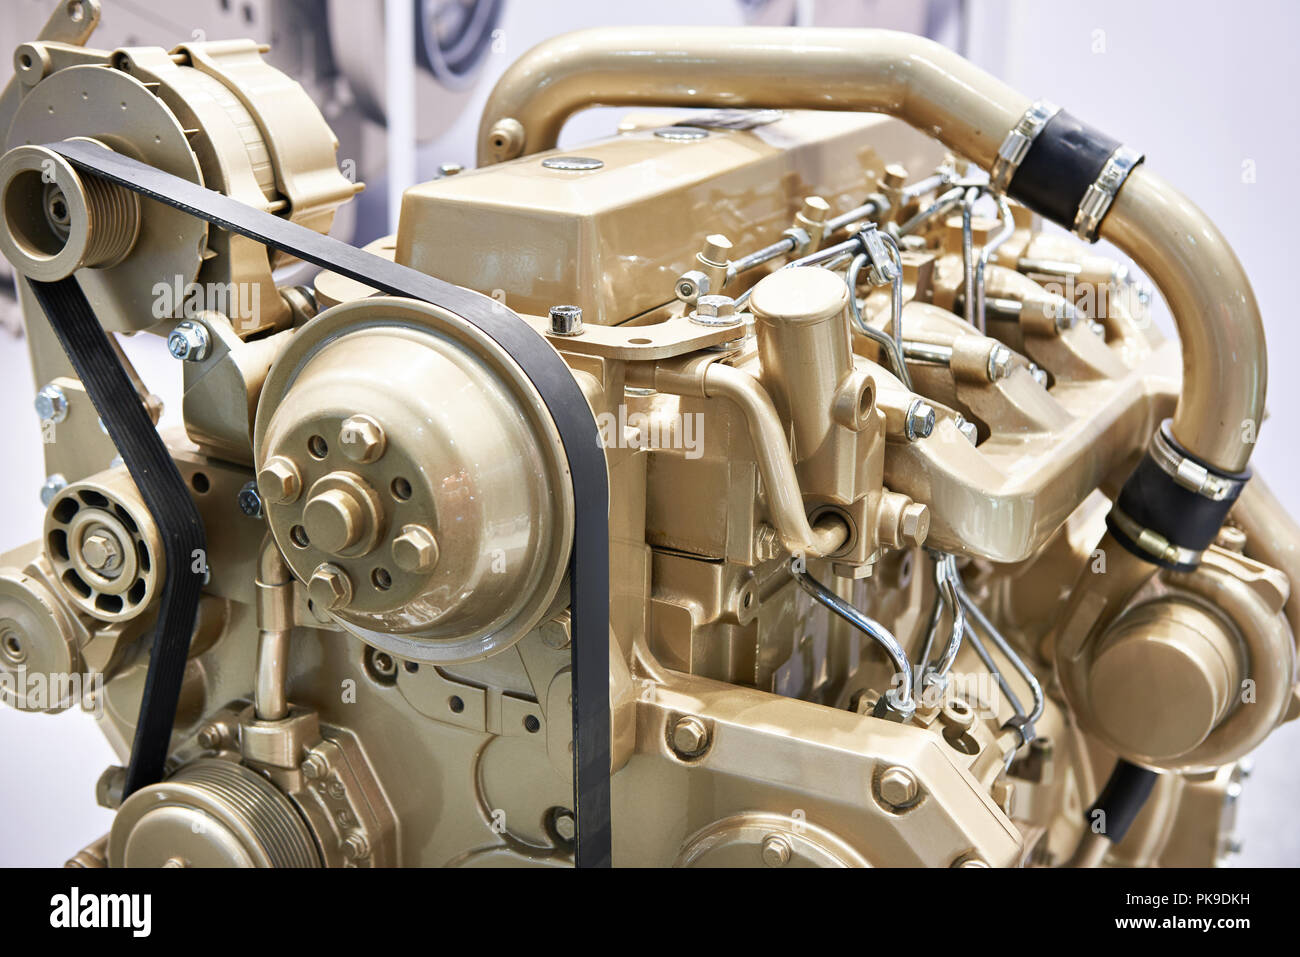 Motore turbo diesel sul supporto Foto Stock